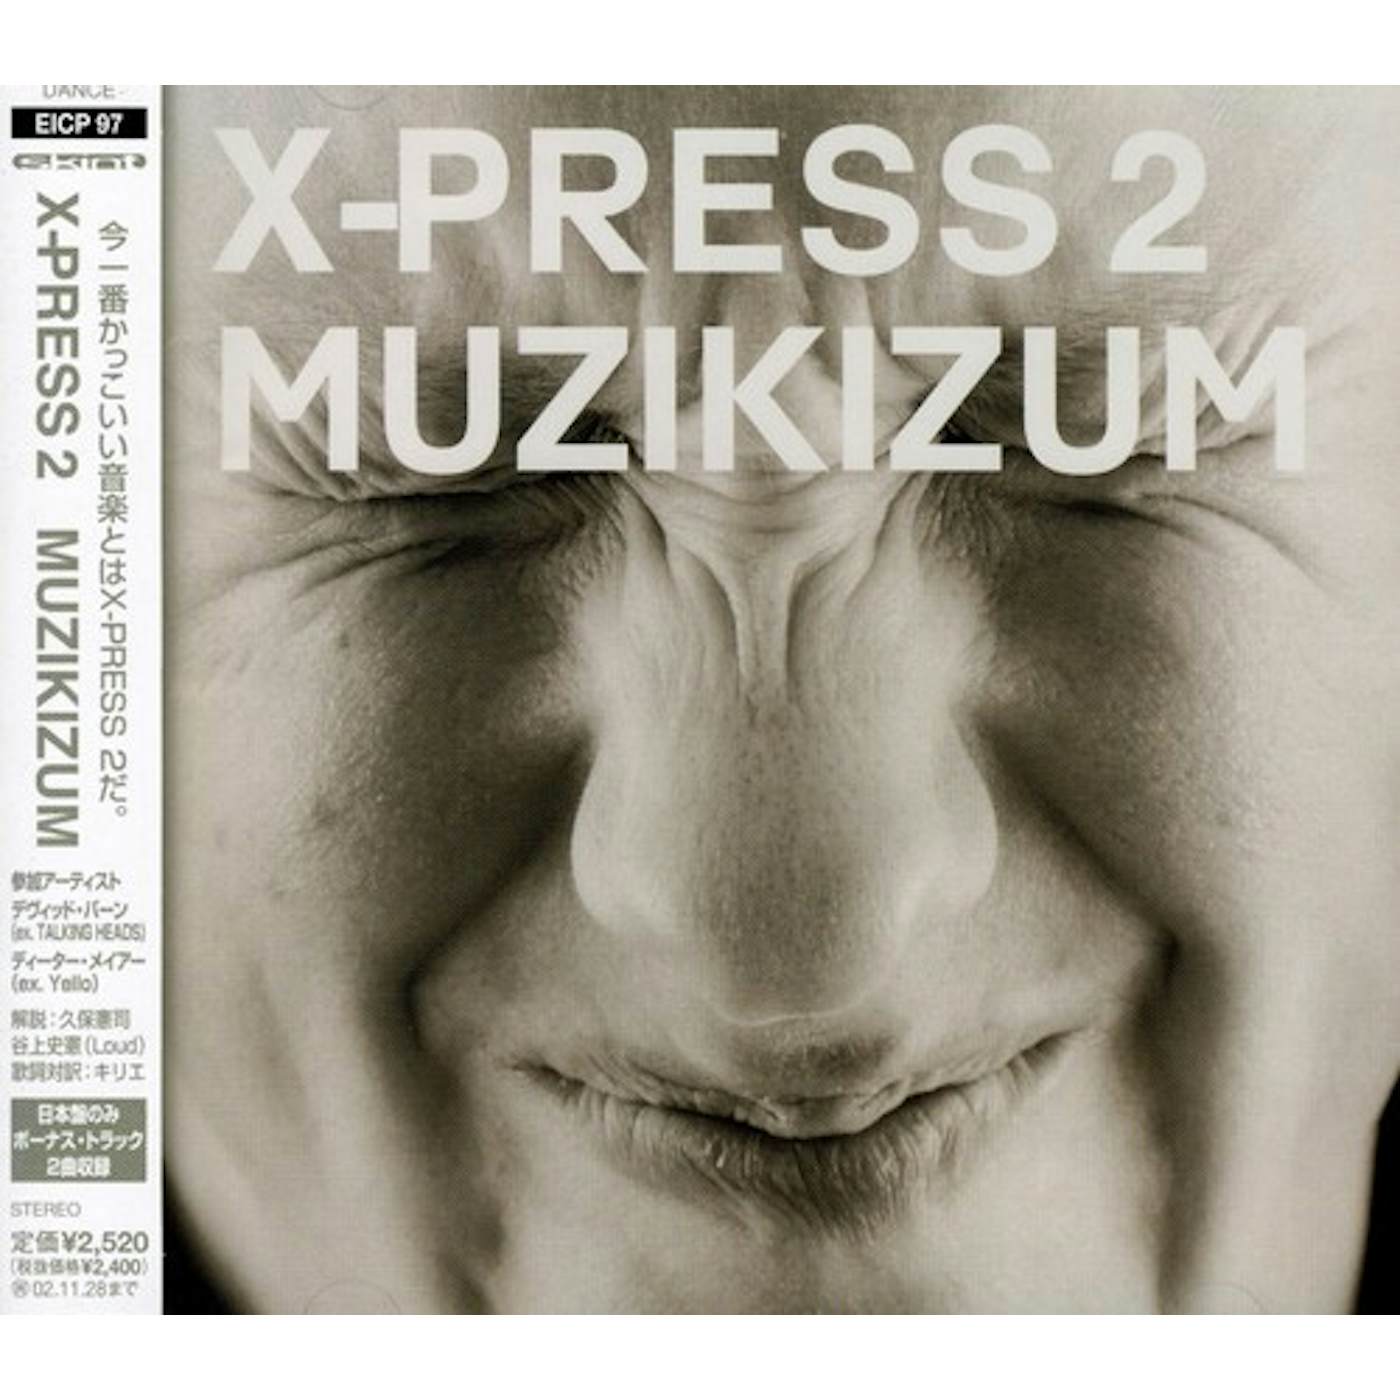 X-Press 2 MUZIKIZUM CD